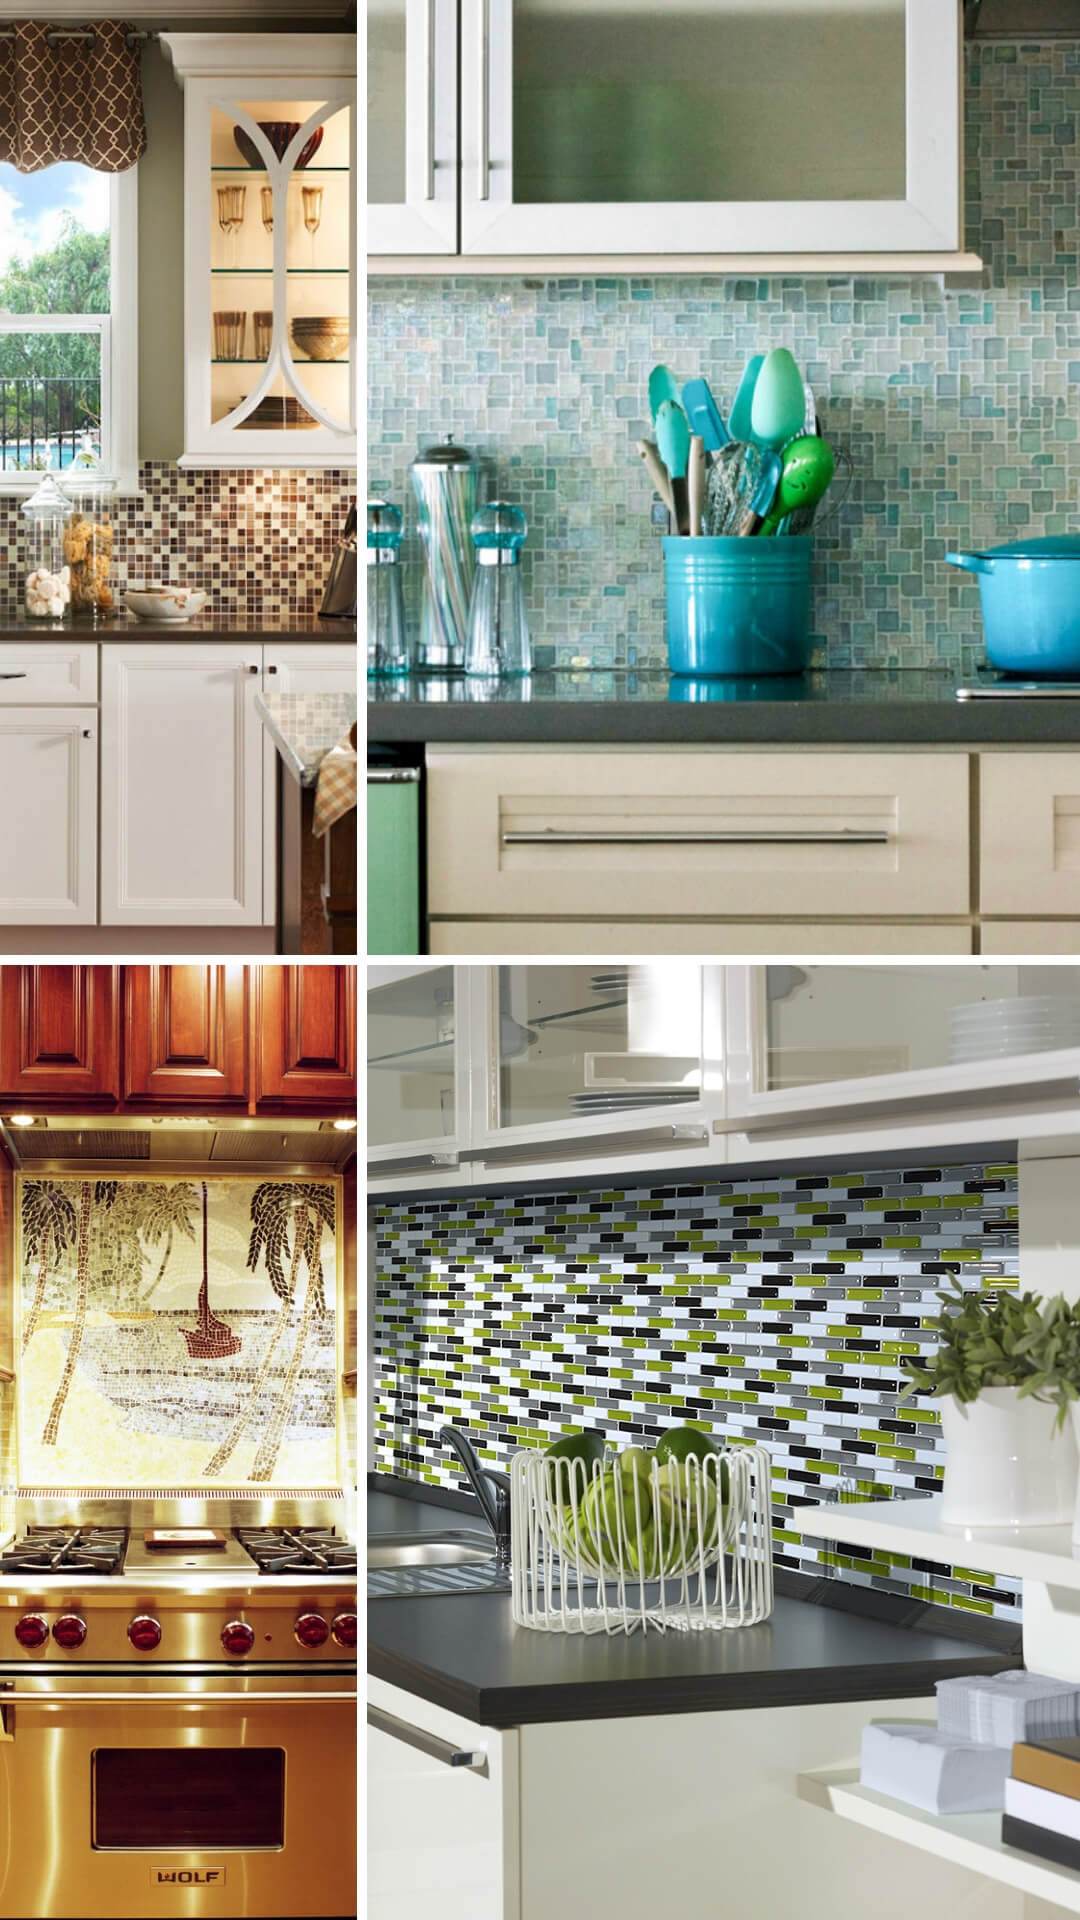 Light blue and turquoise mosaic tile kitchen backsplash